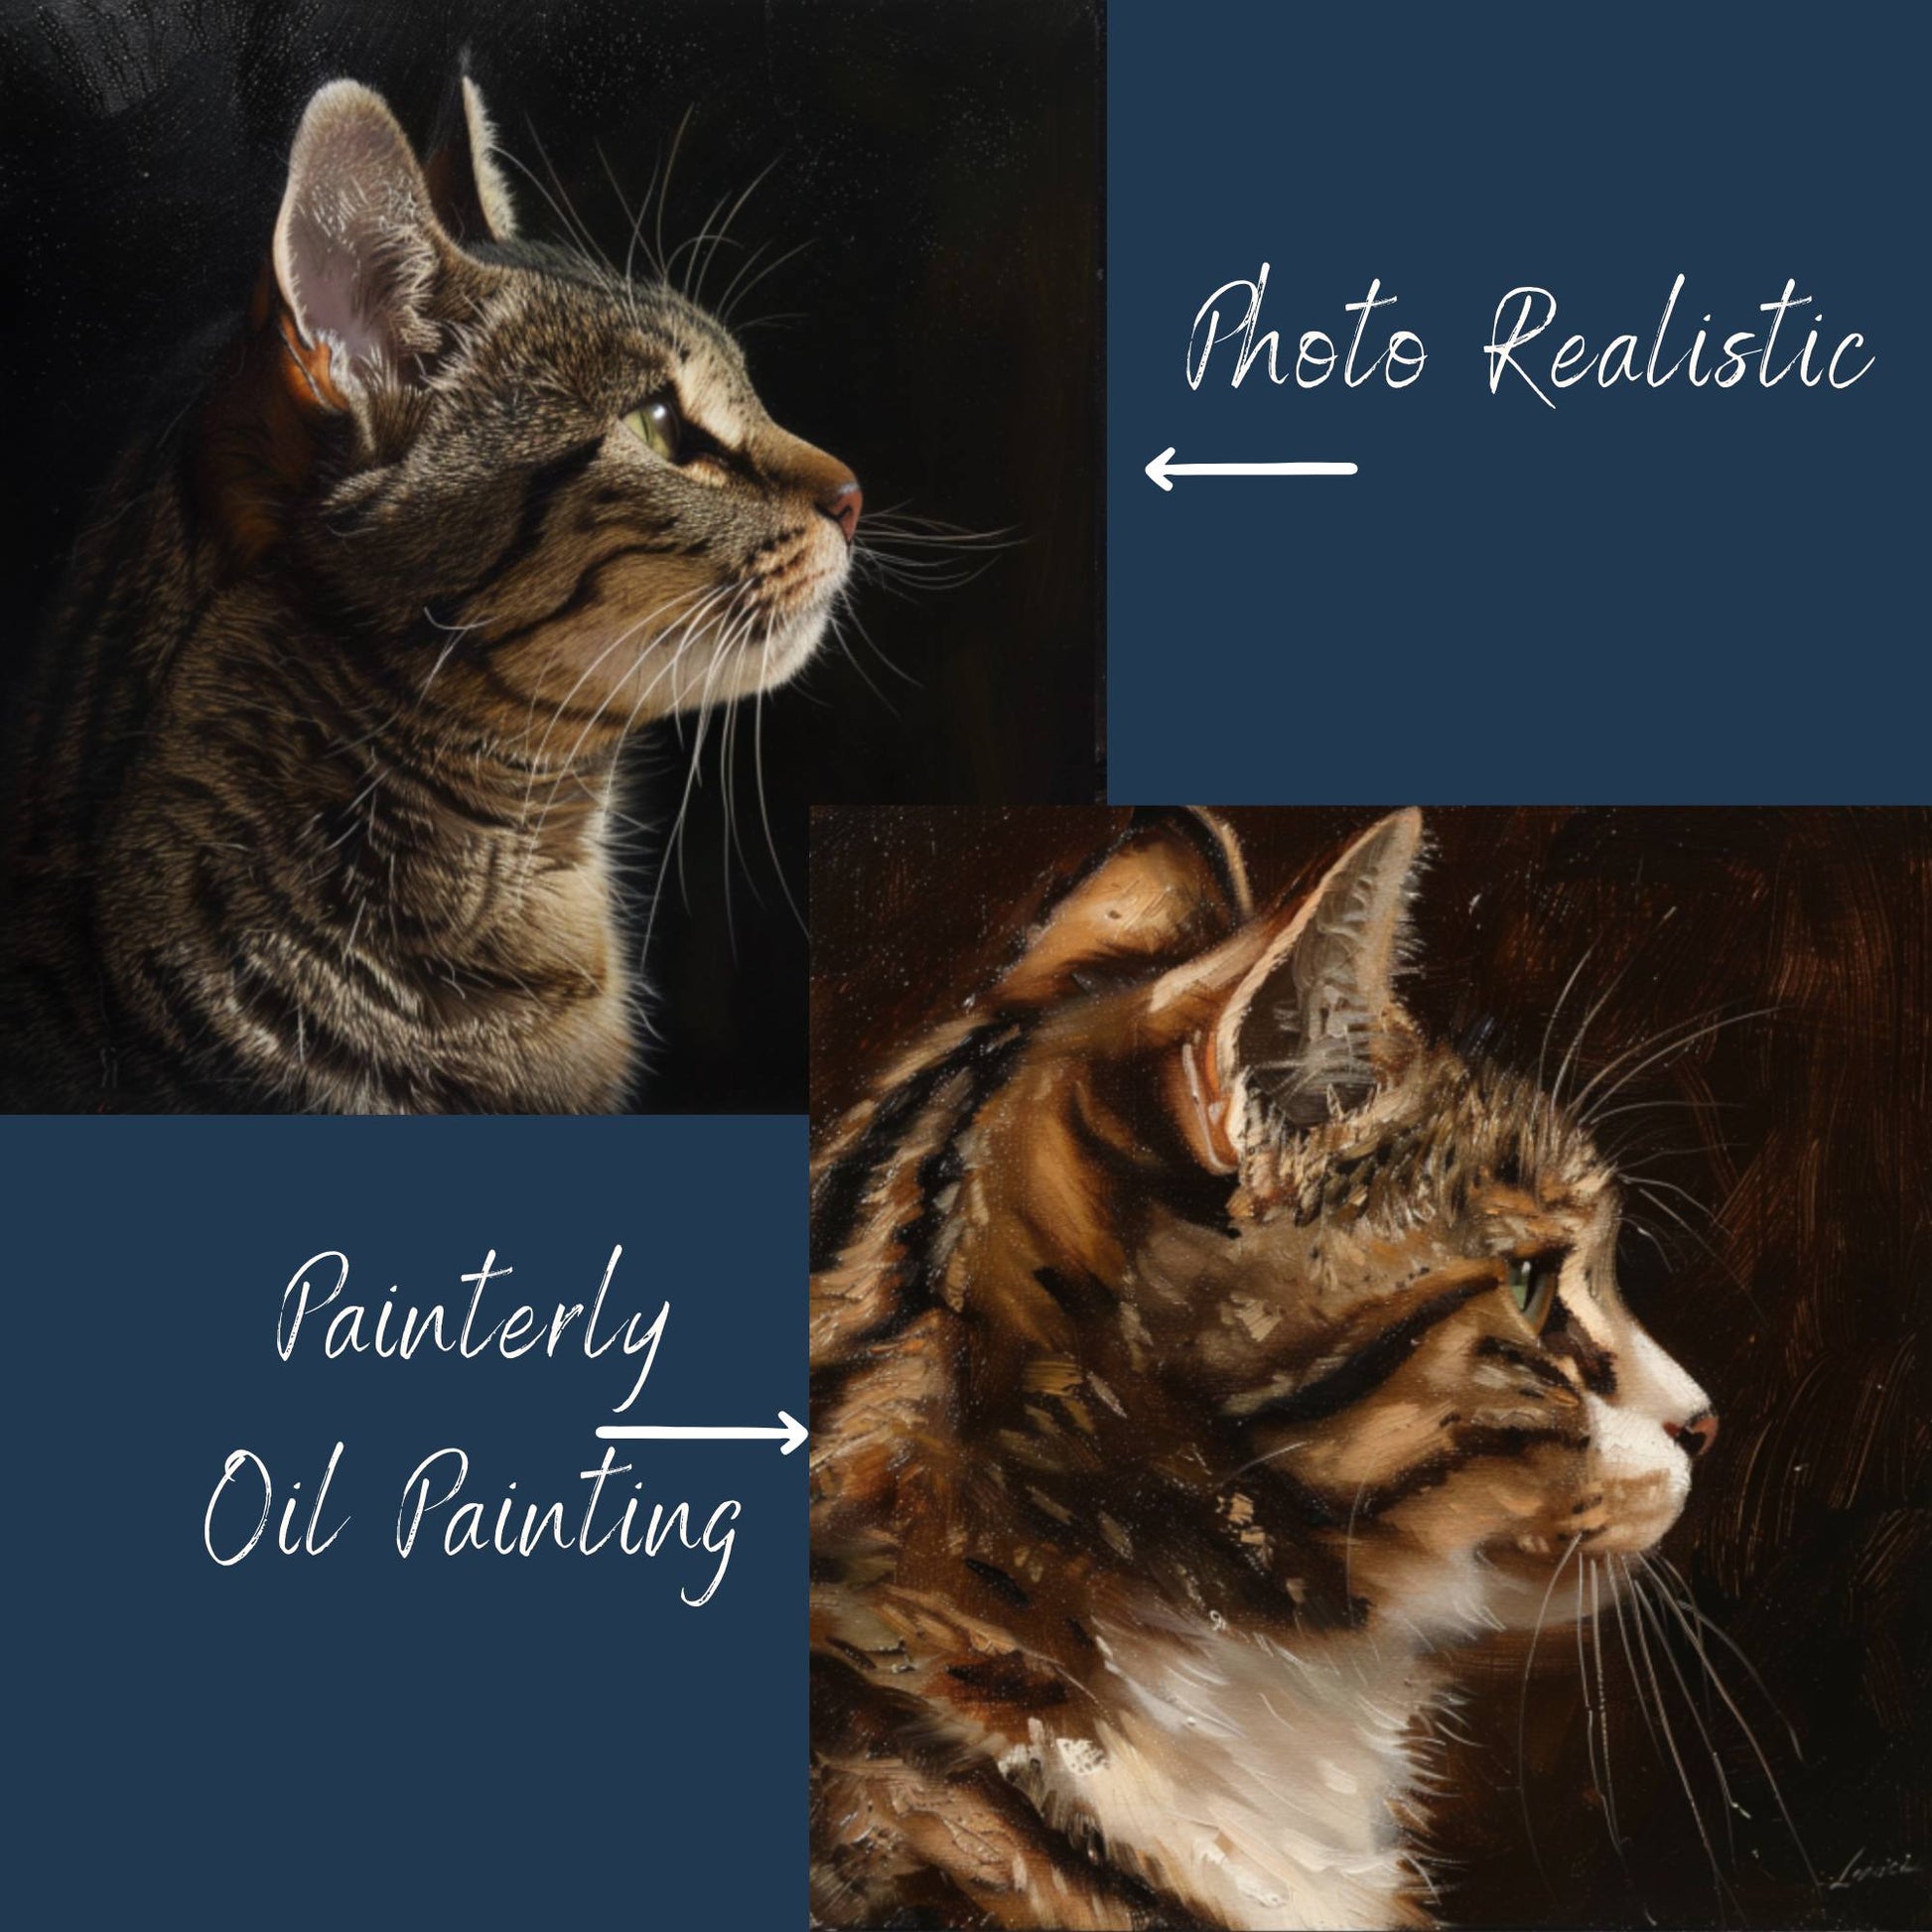 Cat portrait photo realisits versus painterly